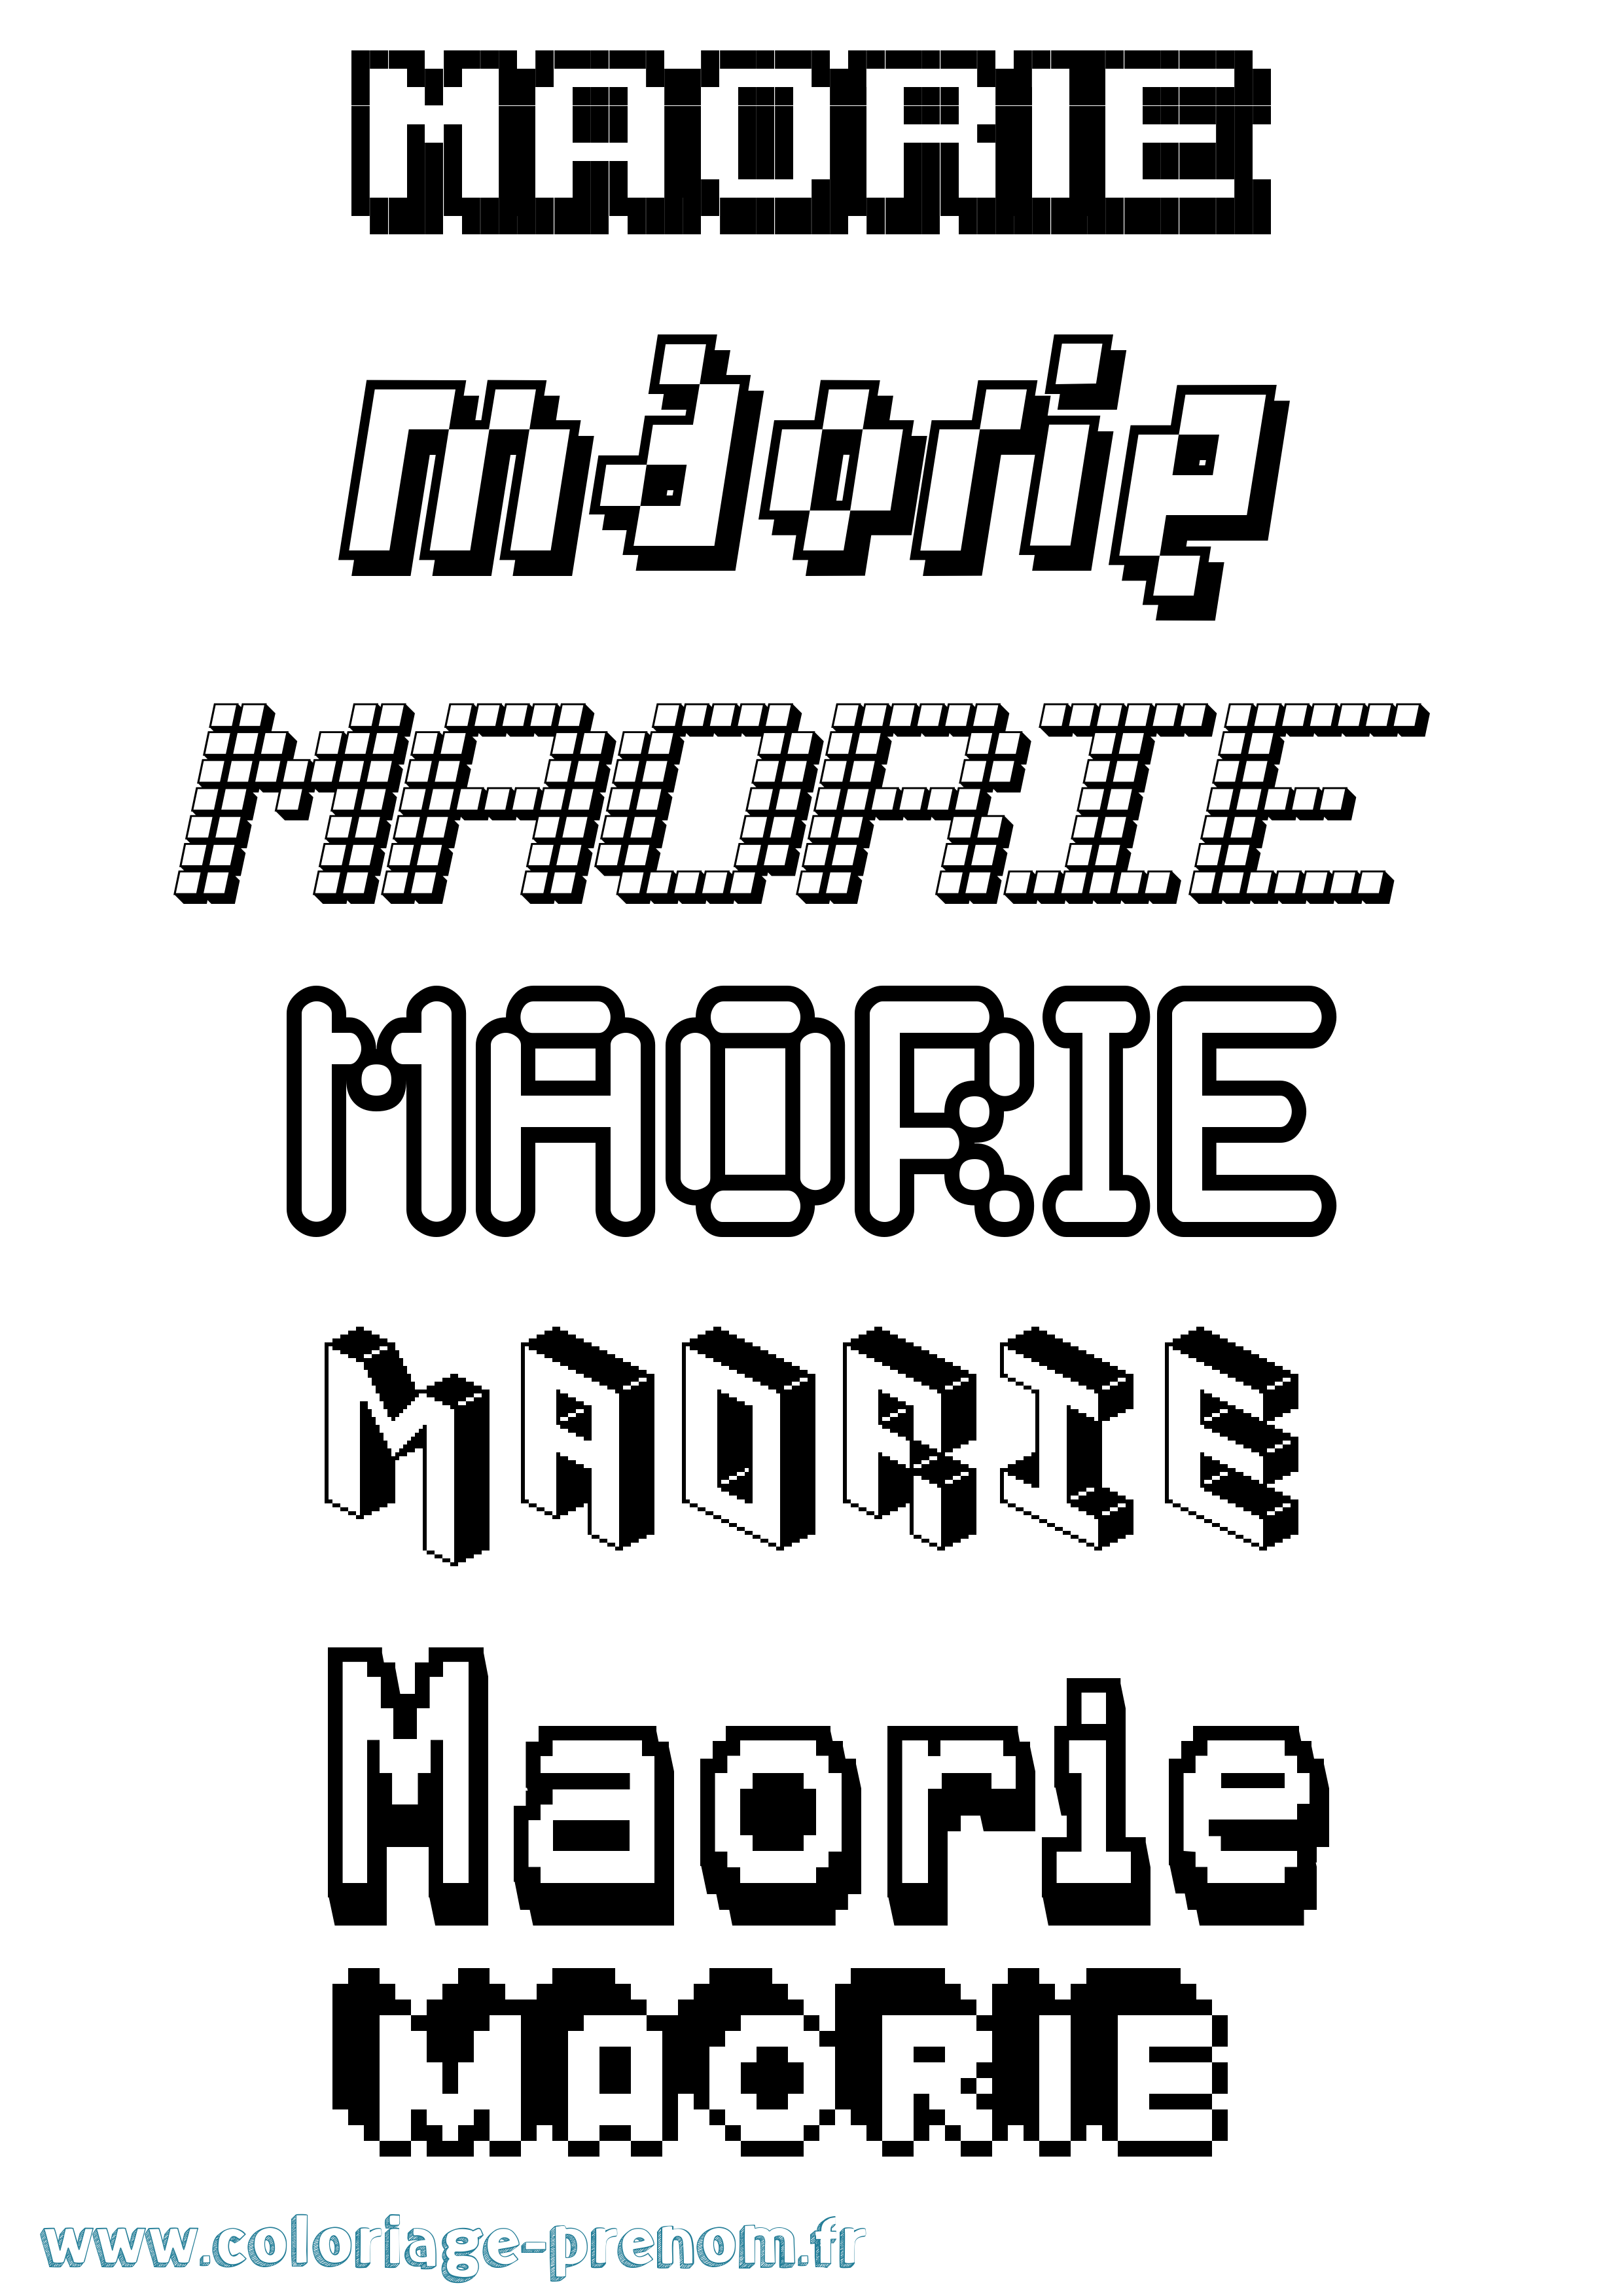 Coloriage prénom Maorie Pixel